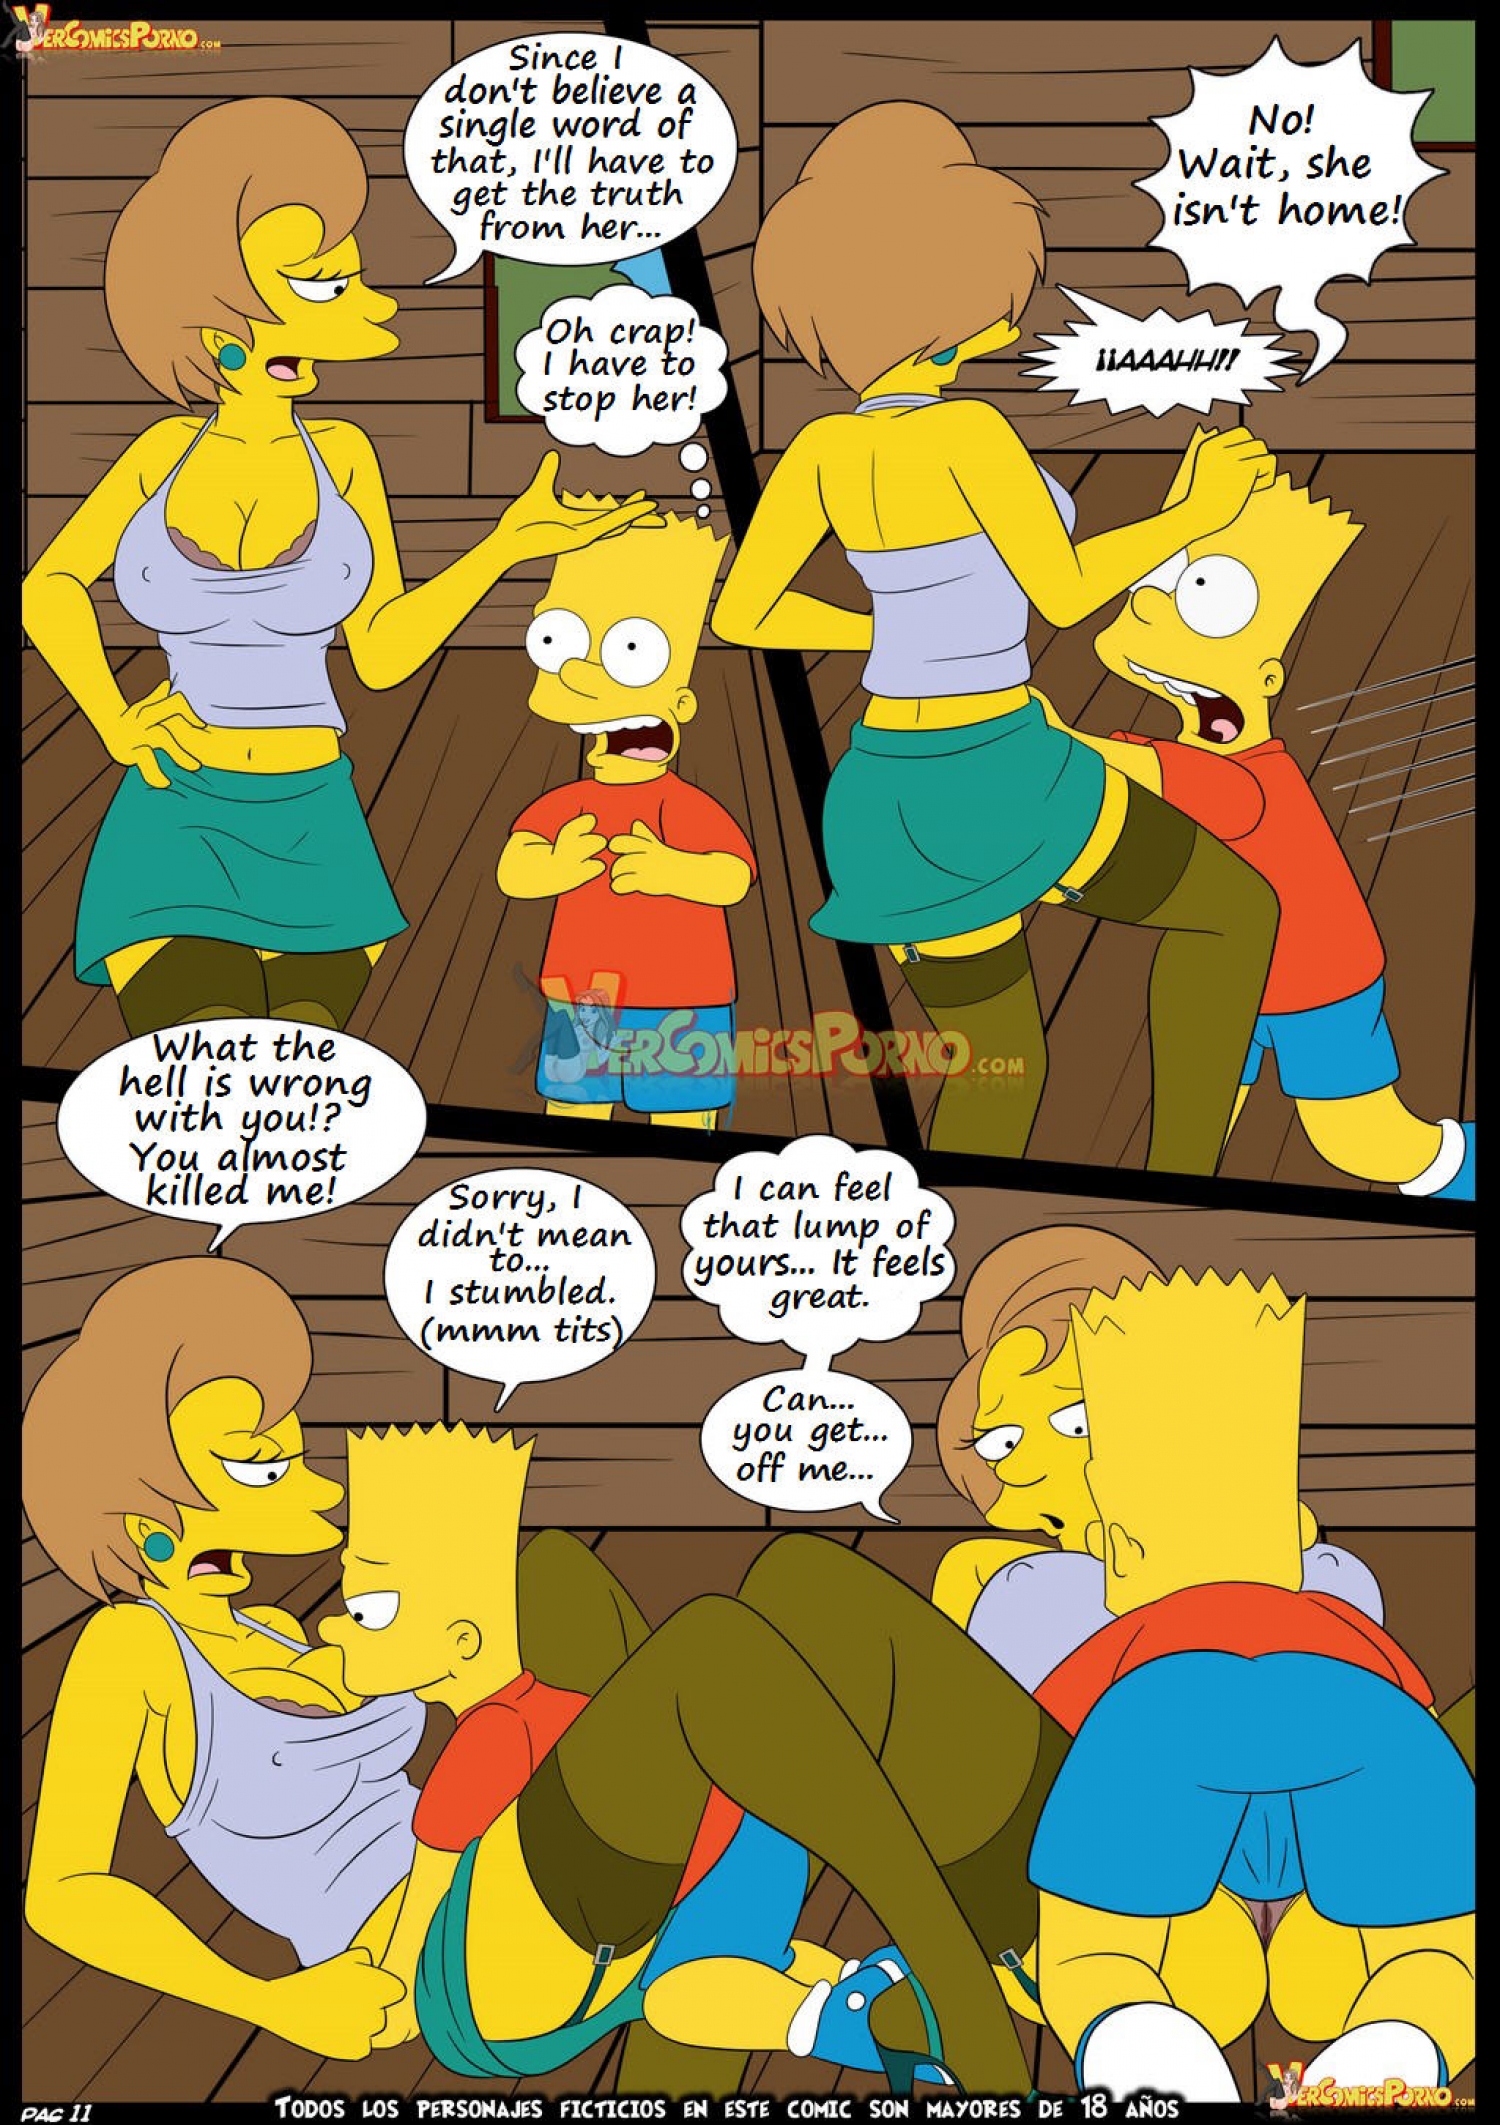 Post 2142036 Bart Simpson Comic Croc Artist Edna Krabappel The Simpsons Vercomicsporno